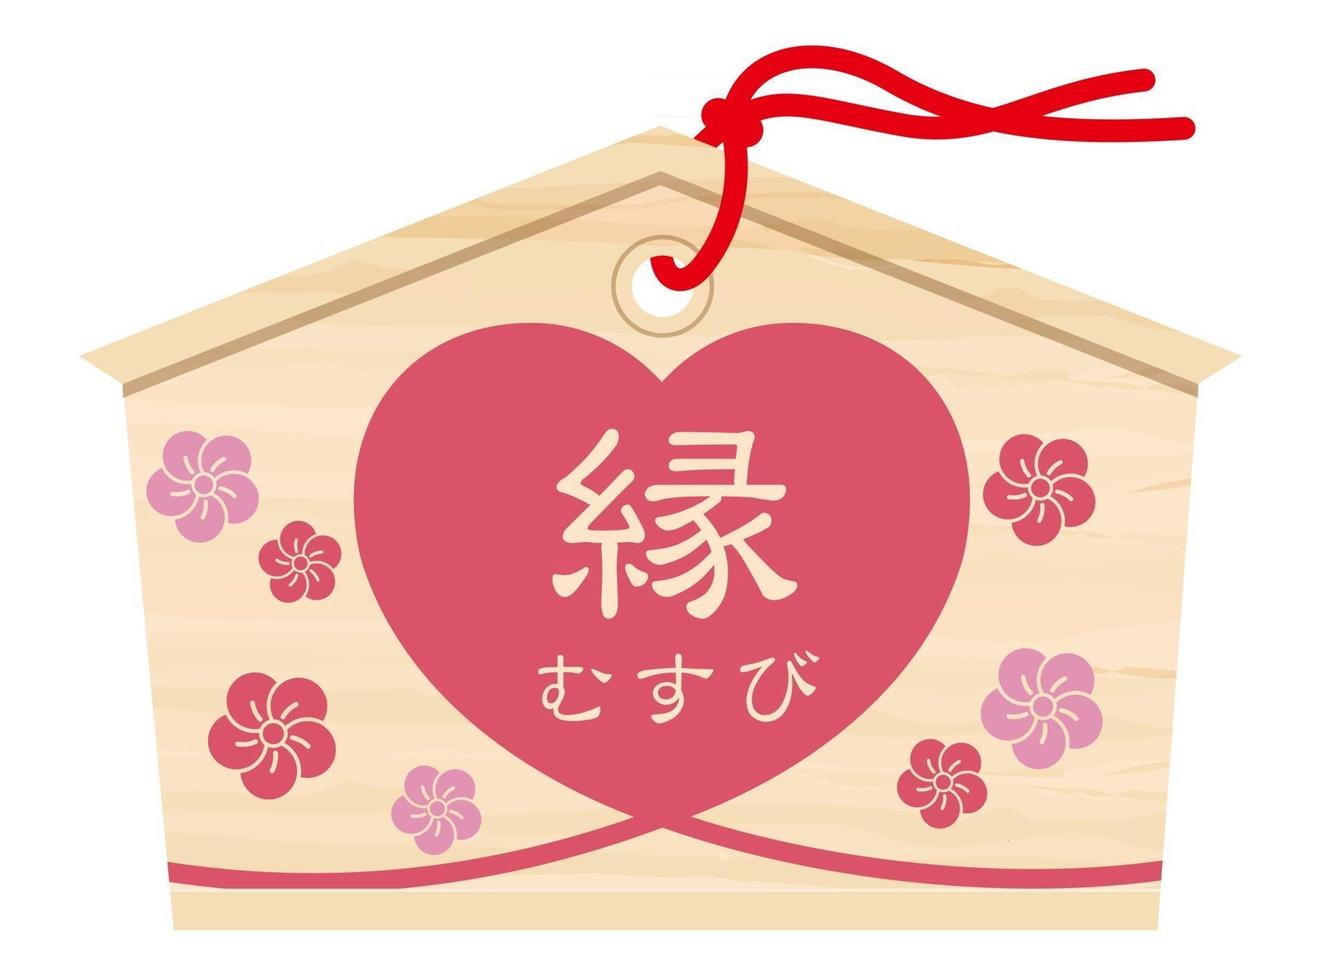 tablilla votiva japonesa con caligrafía de pincel kanji que desea un mejor lazo matrimonial y una forma de corazón. vector